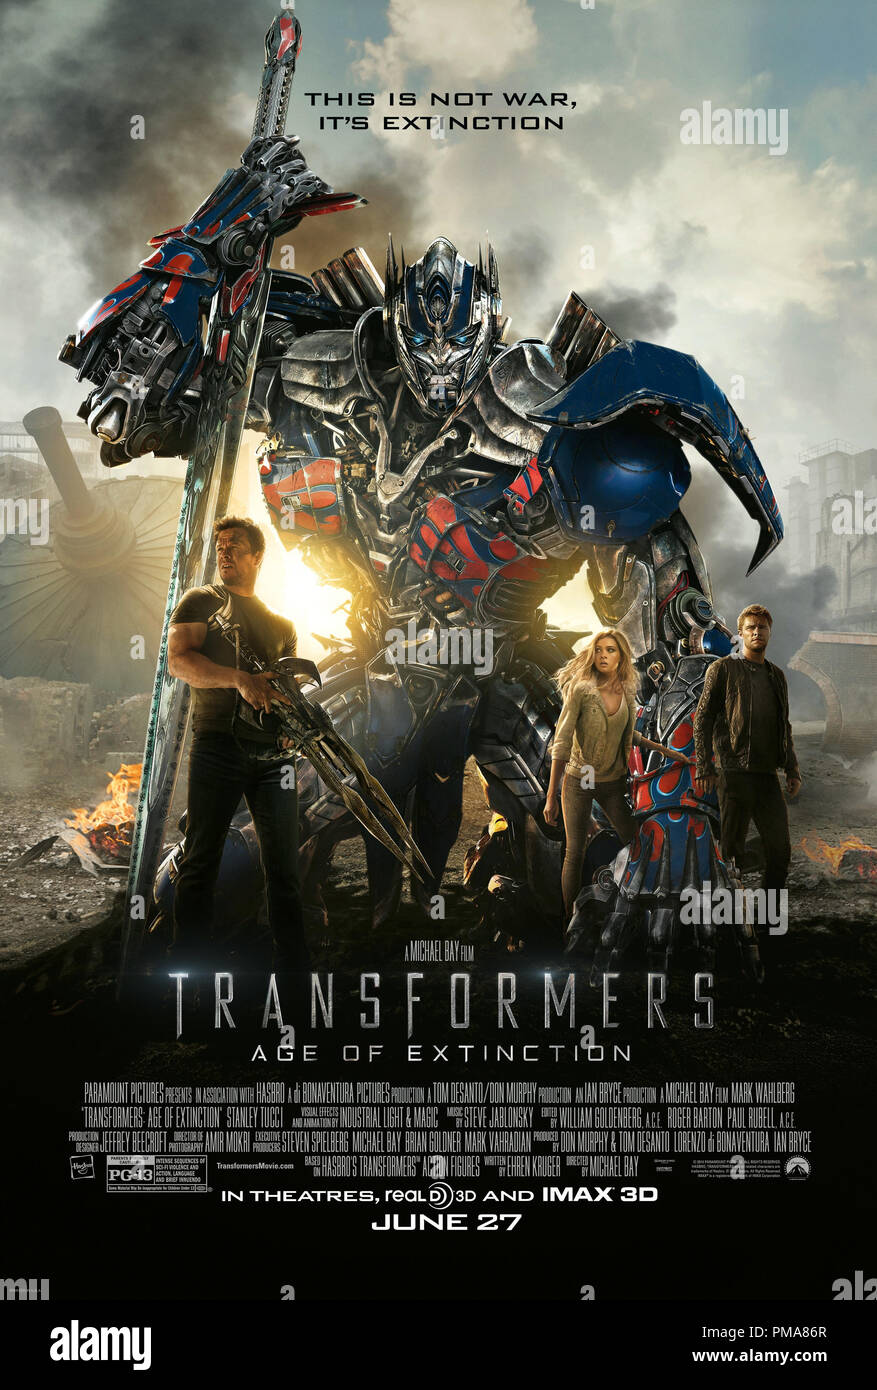 La Paramount Pictures transformers: ETÀ DI ESTINZIONE - Poster Foto Stock